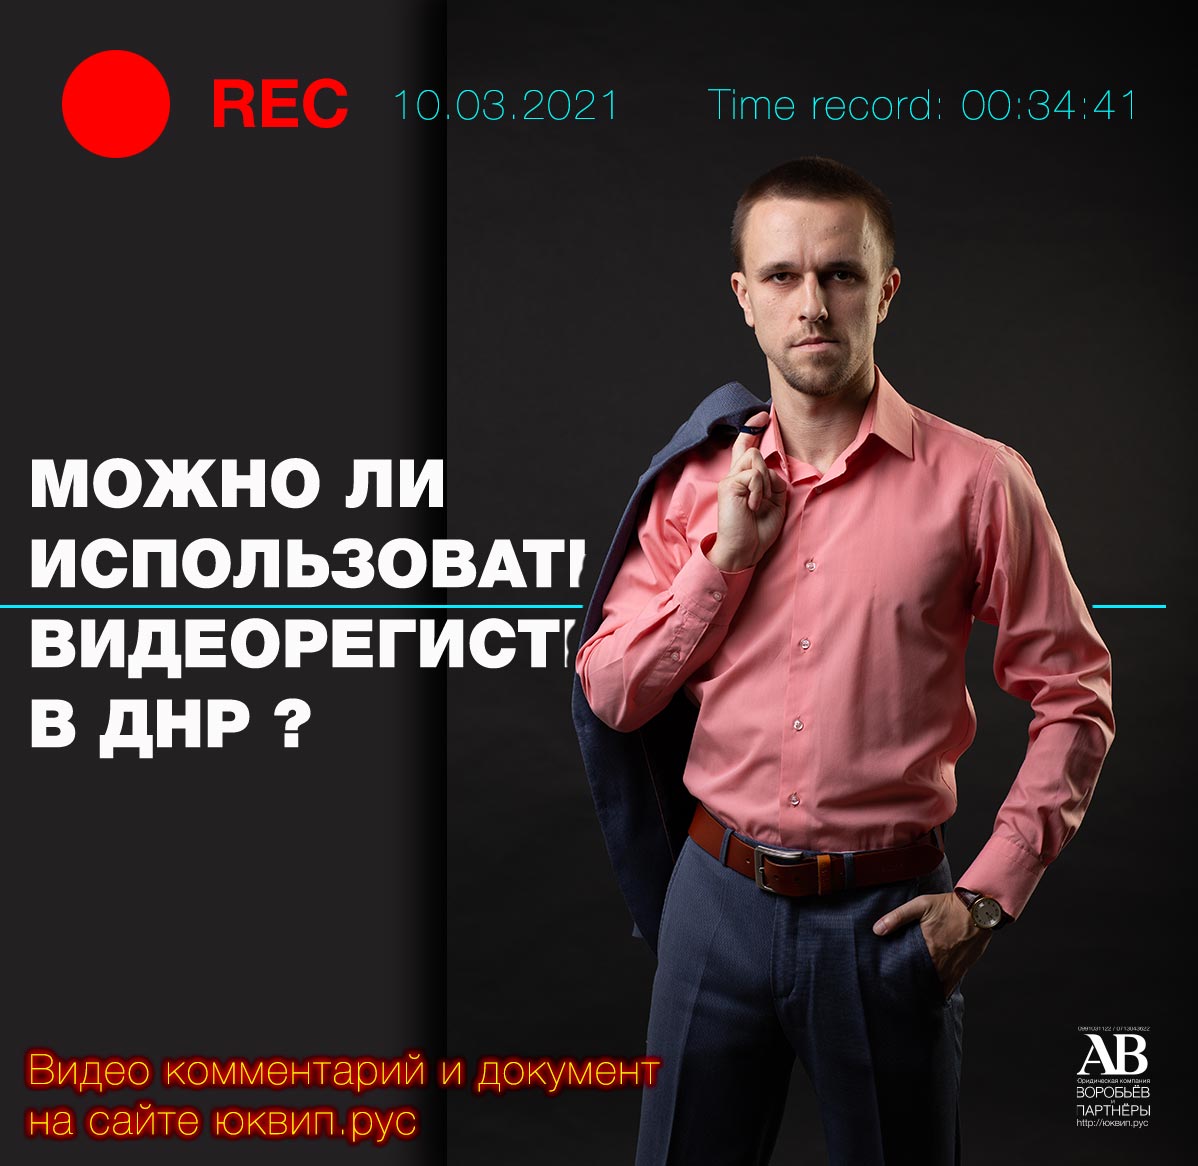 Продолжают поступать вопросы по видеорегистраторам в ДНР